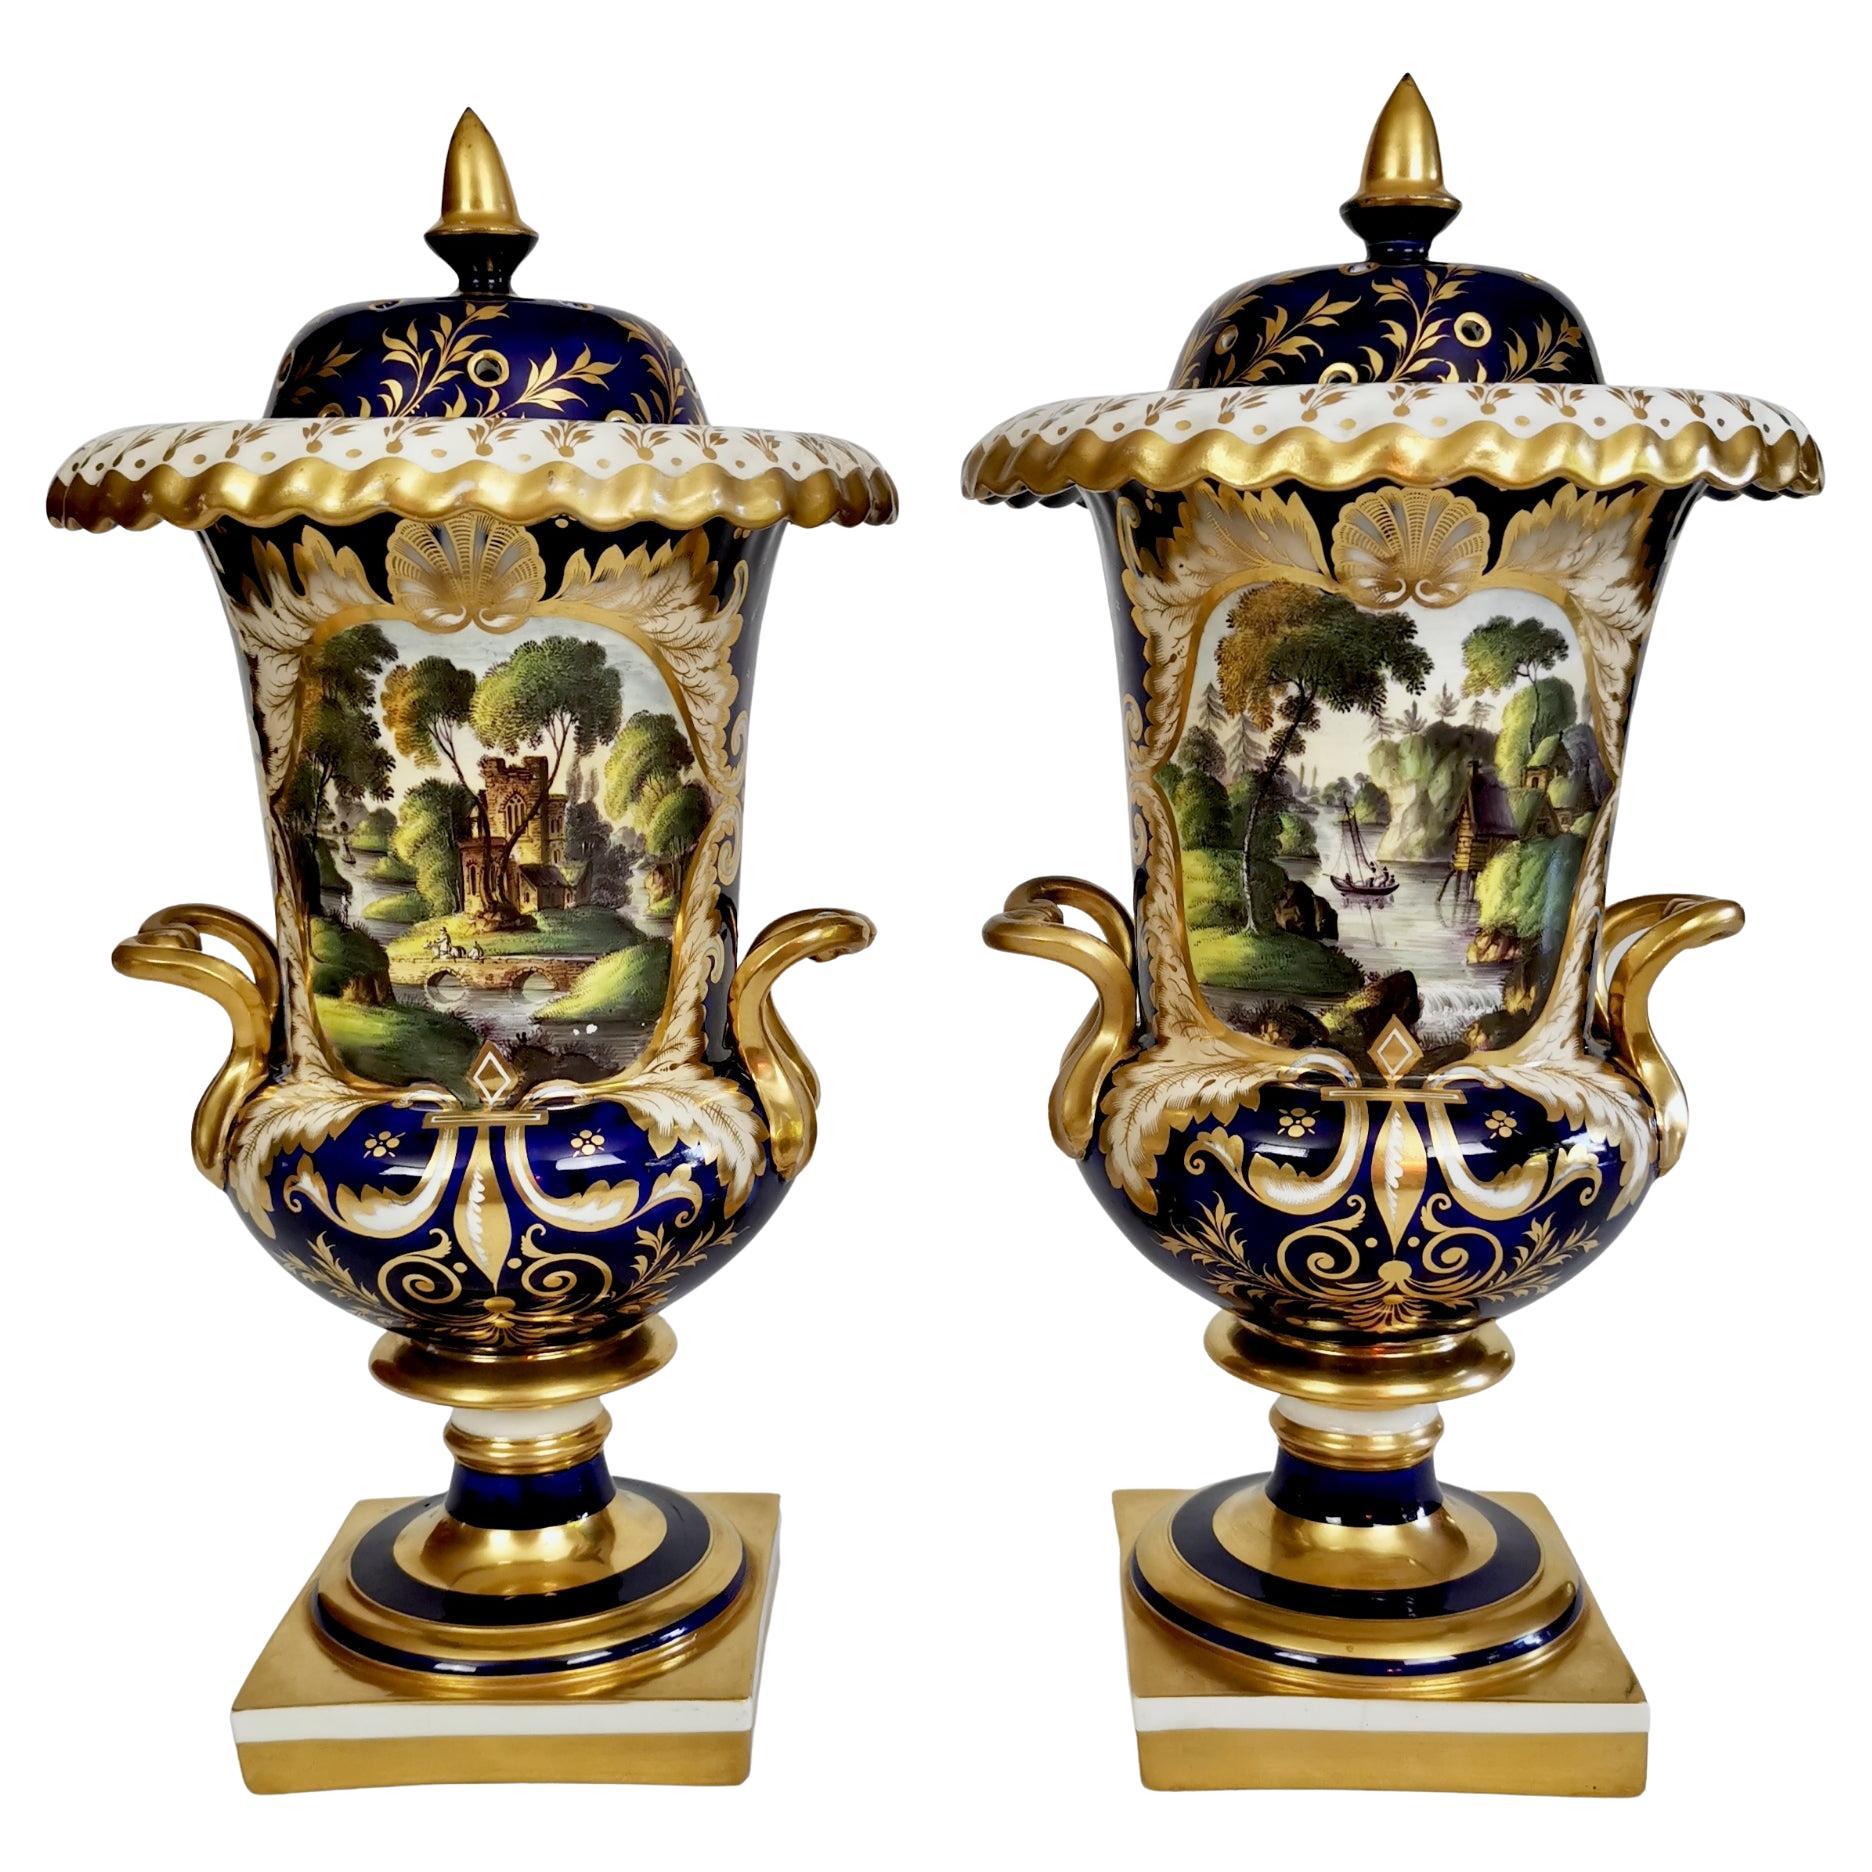 English Pair of Porcelain Potpourri Vases, Cobalt Blue with Landscapes, ca 1830